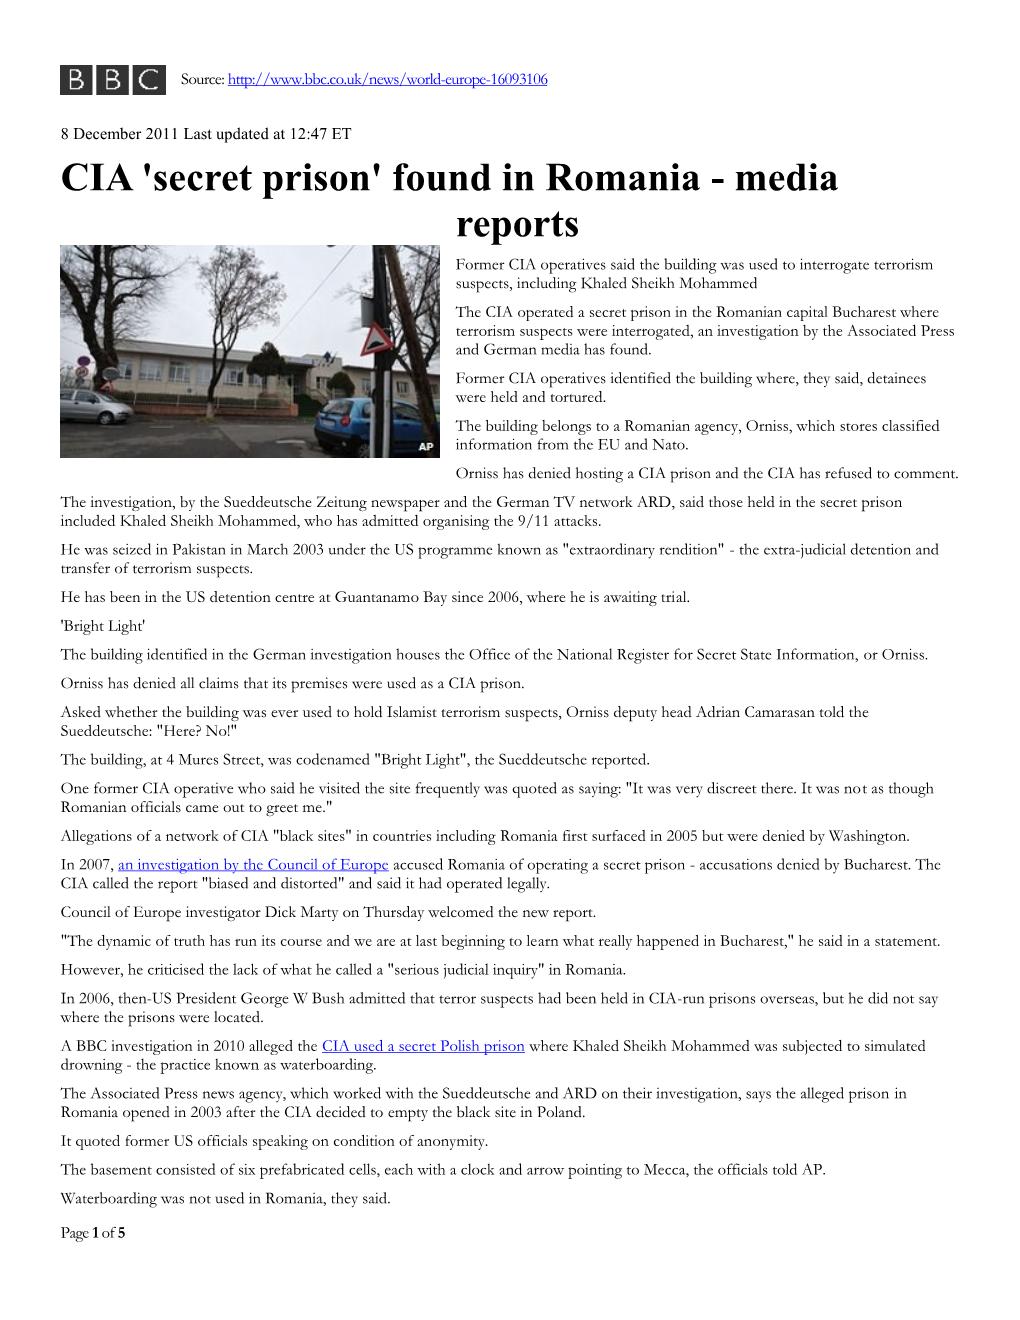 CIA 'Secret Prison'